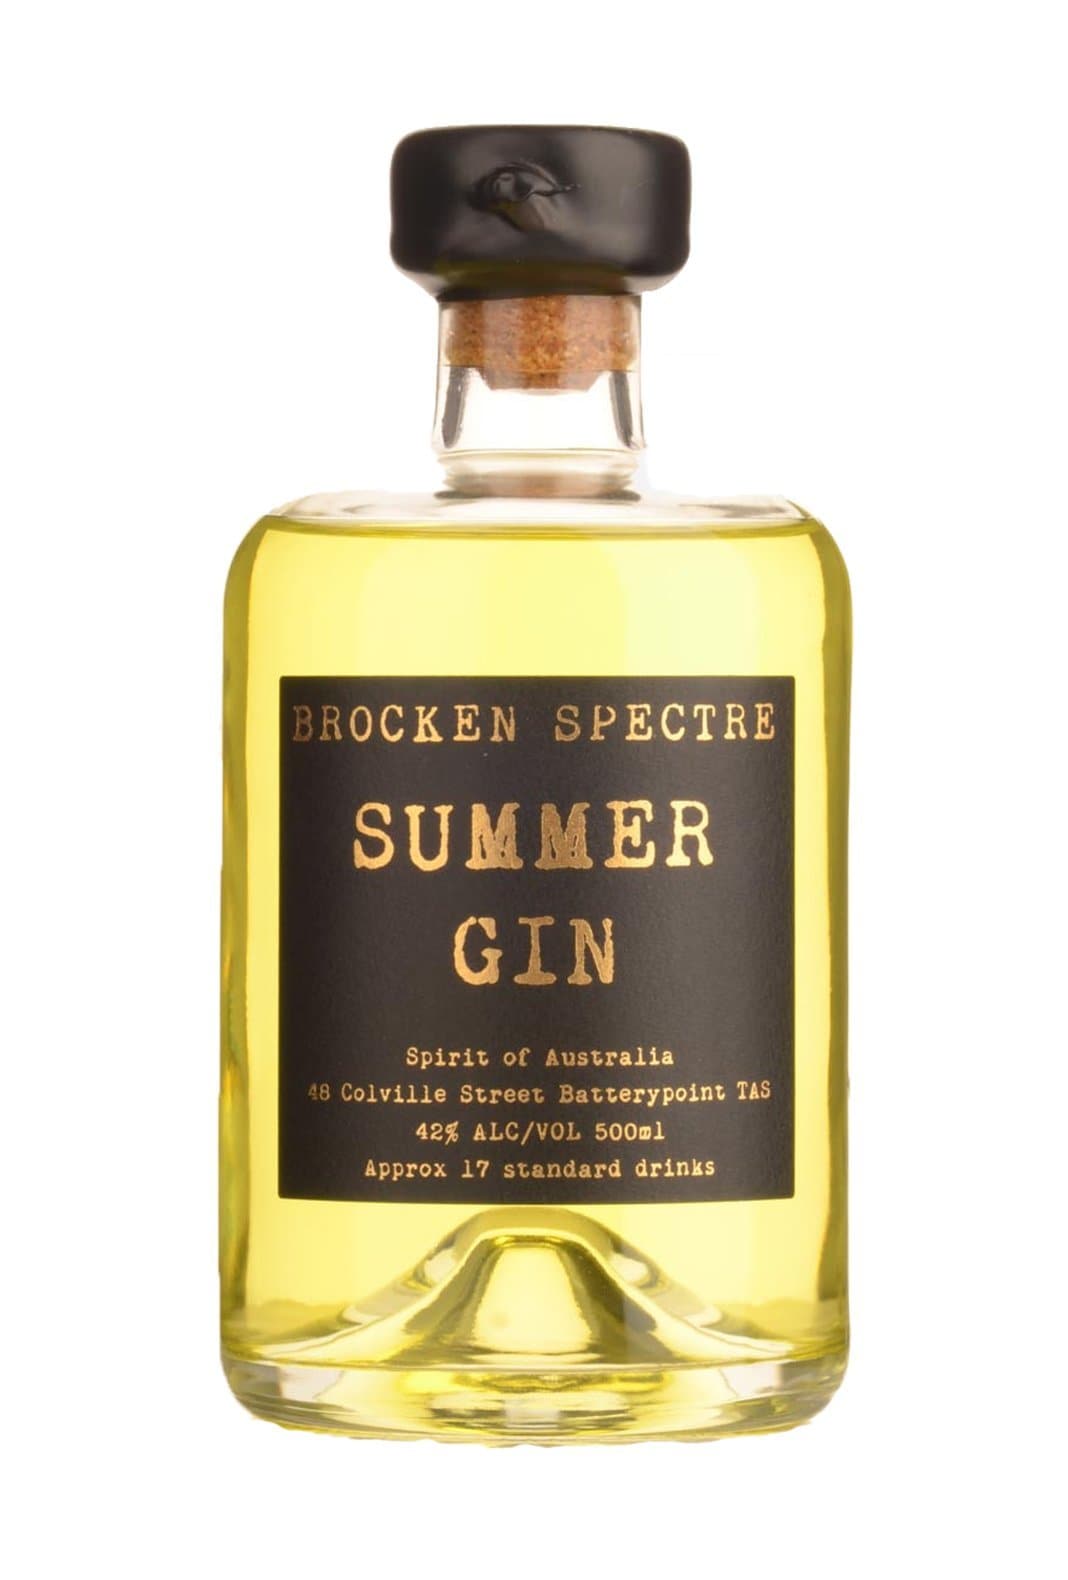 Brocken Spectre Summer Gin 42% 500ml | Gin | Shop online at Spirits of France